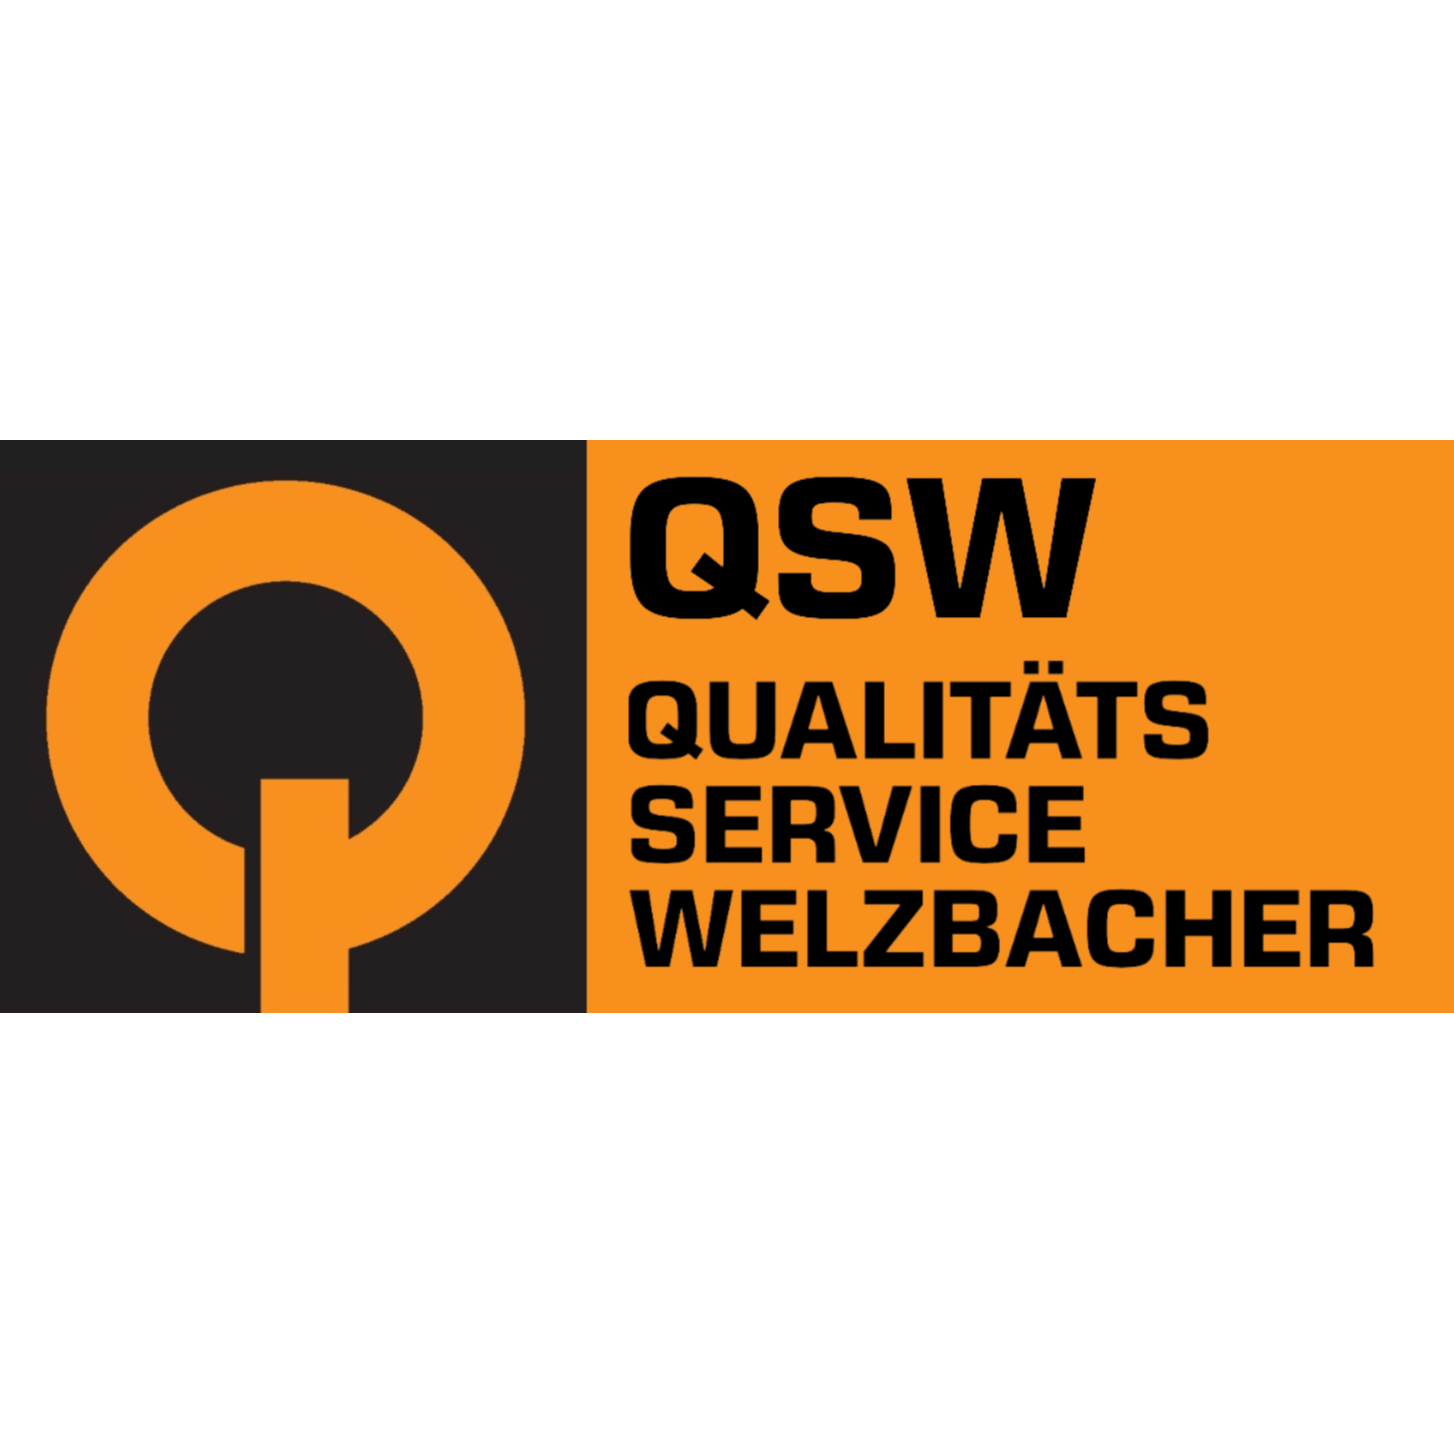 QSW Qualitäts Service Welzbacher GmbH in Aschaffenburg - Logo